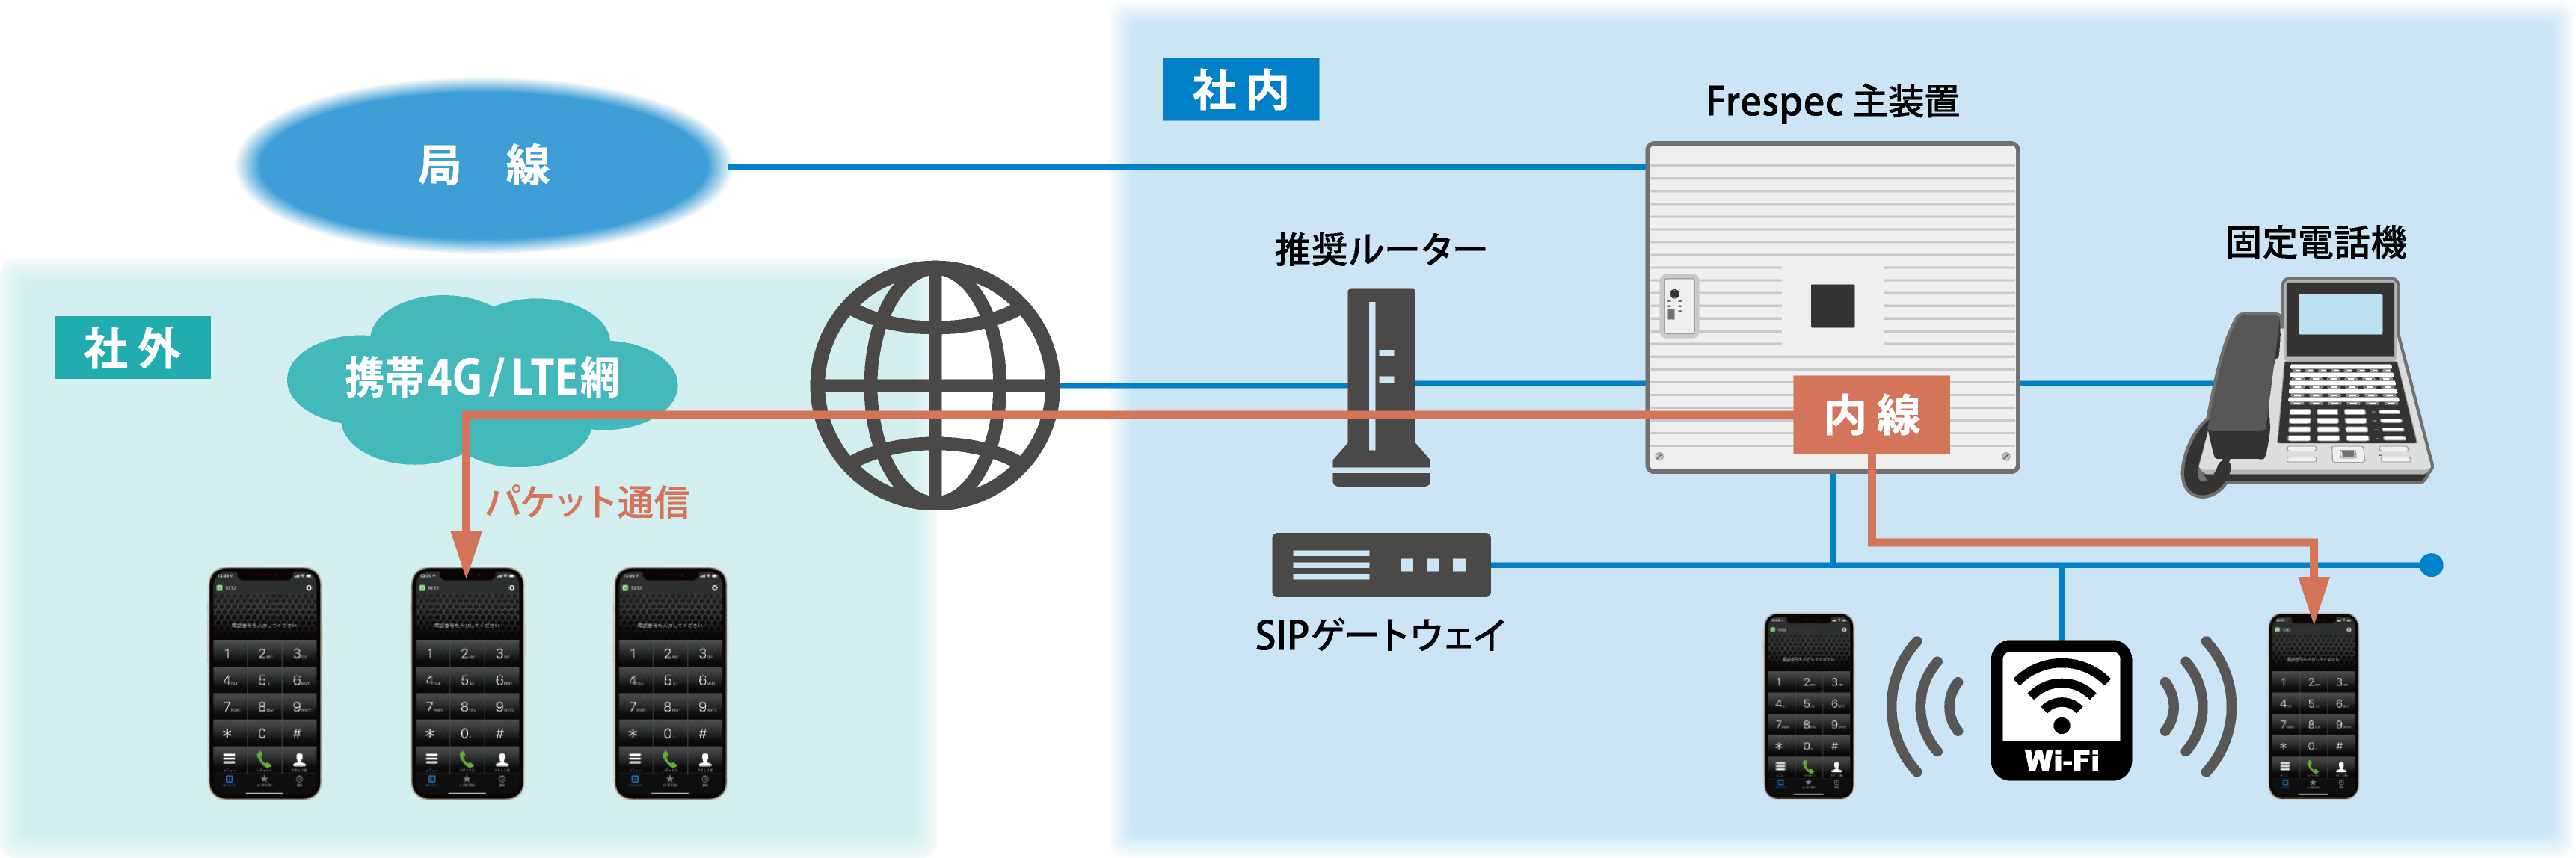 ビジネスフォン・フレスペック オンプレミスPBX型ハイブリット「スマホ内線システムの接続システムイメージ図